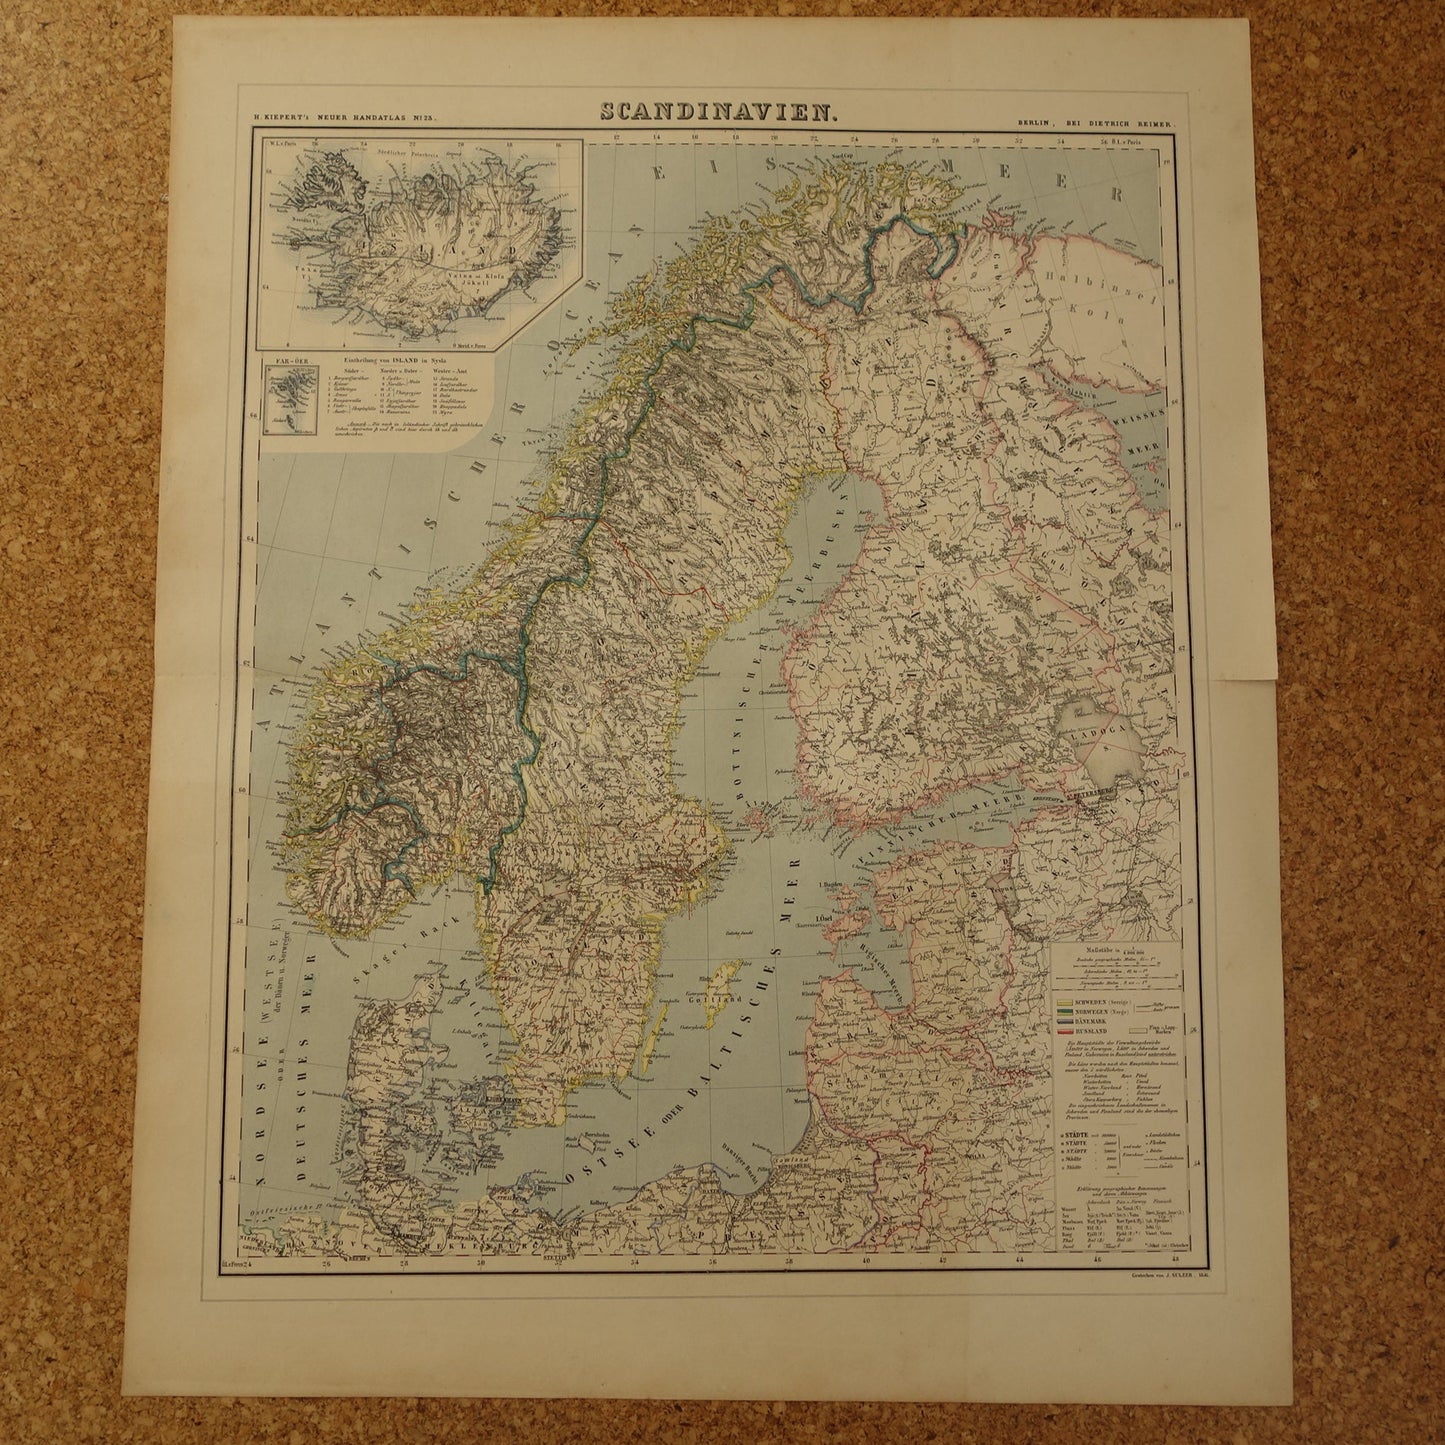 Grote landkaart van Noorwegen Zweden Finland in 1856 originele antieke kaart vintage poster met jaartal van Scandinavië